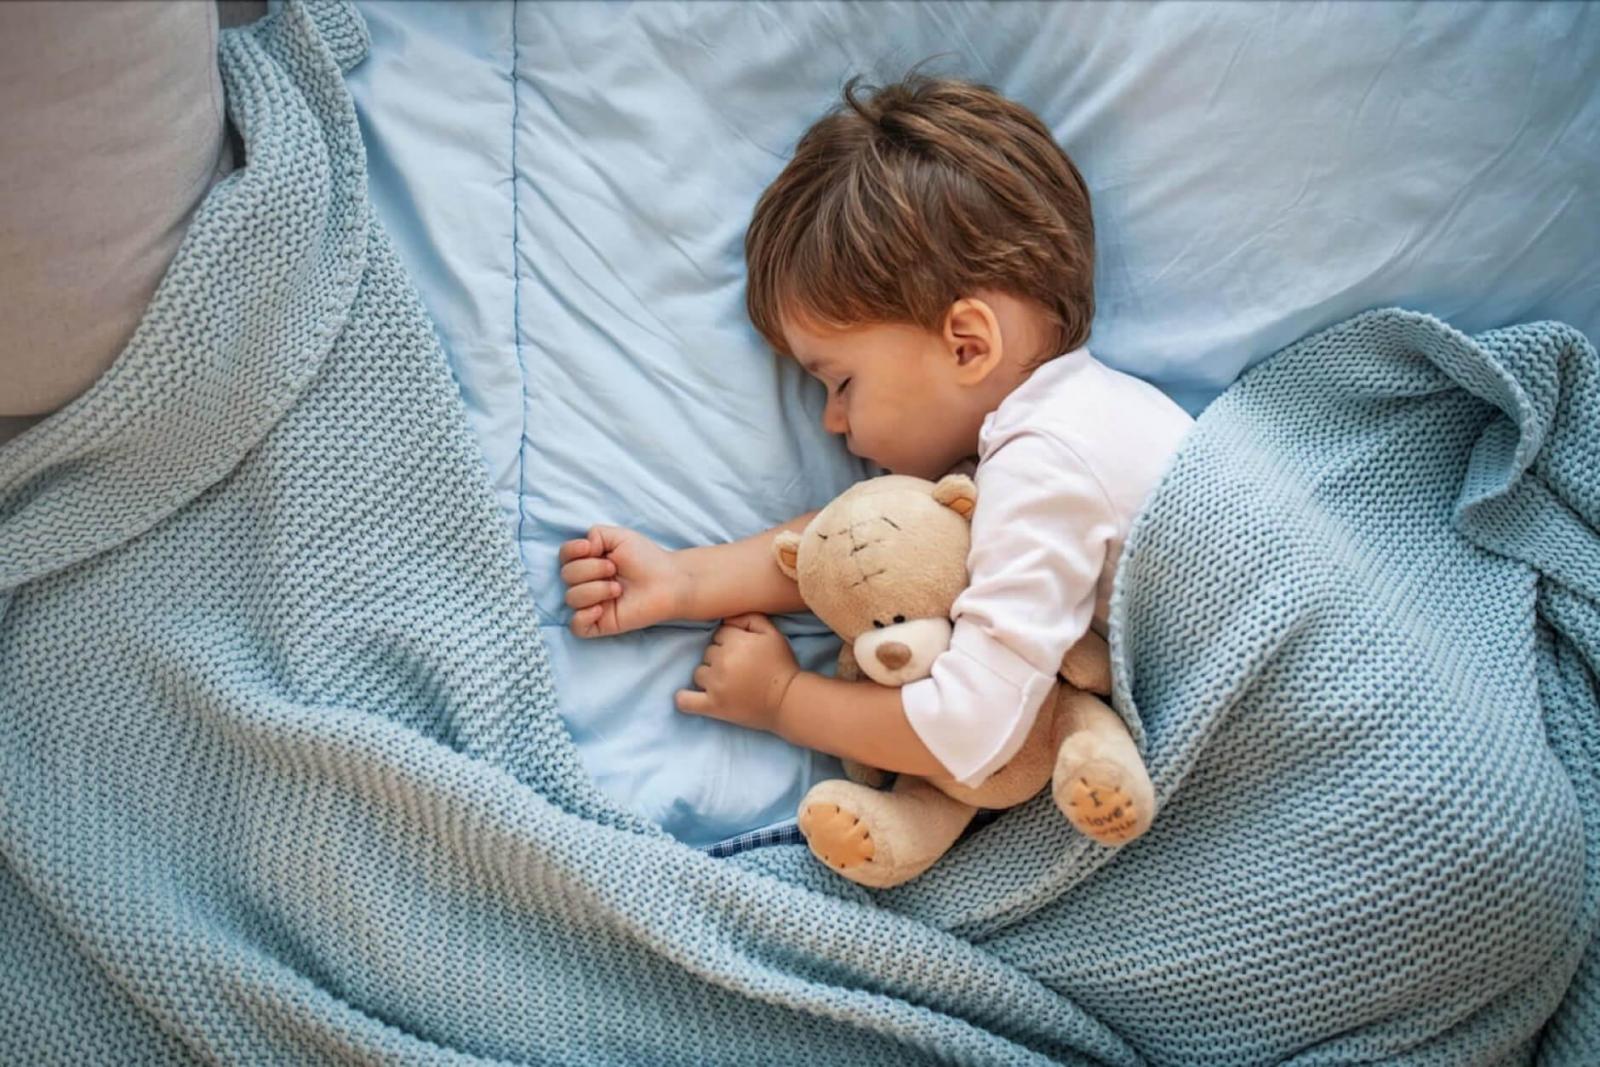 Tập cho bé thói quen ngủ đúng giờ đủ giấc